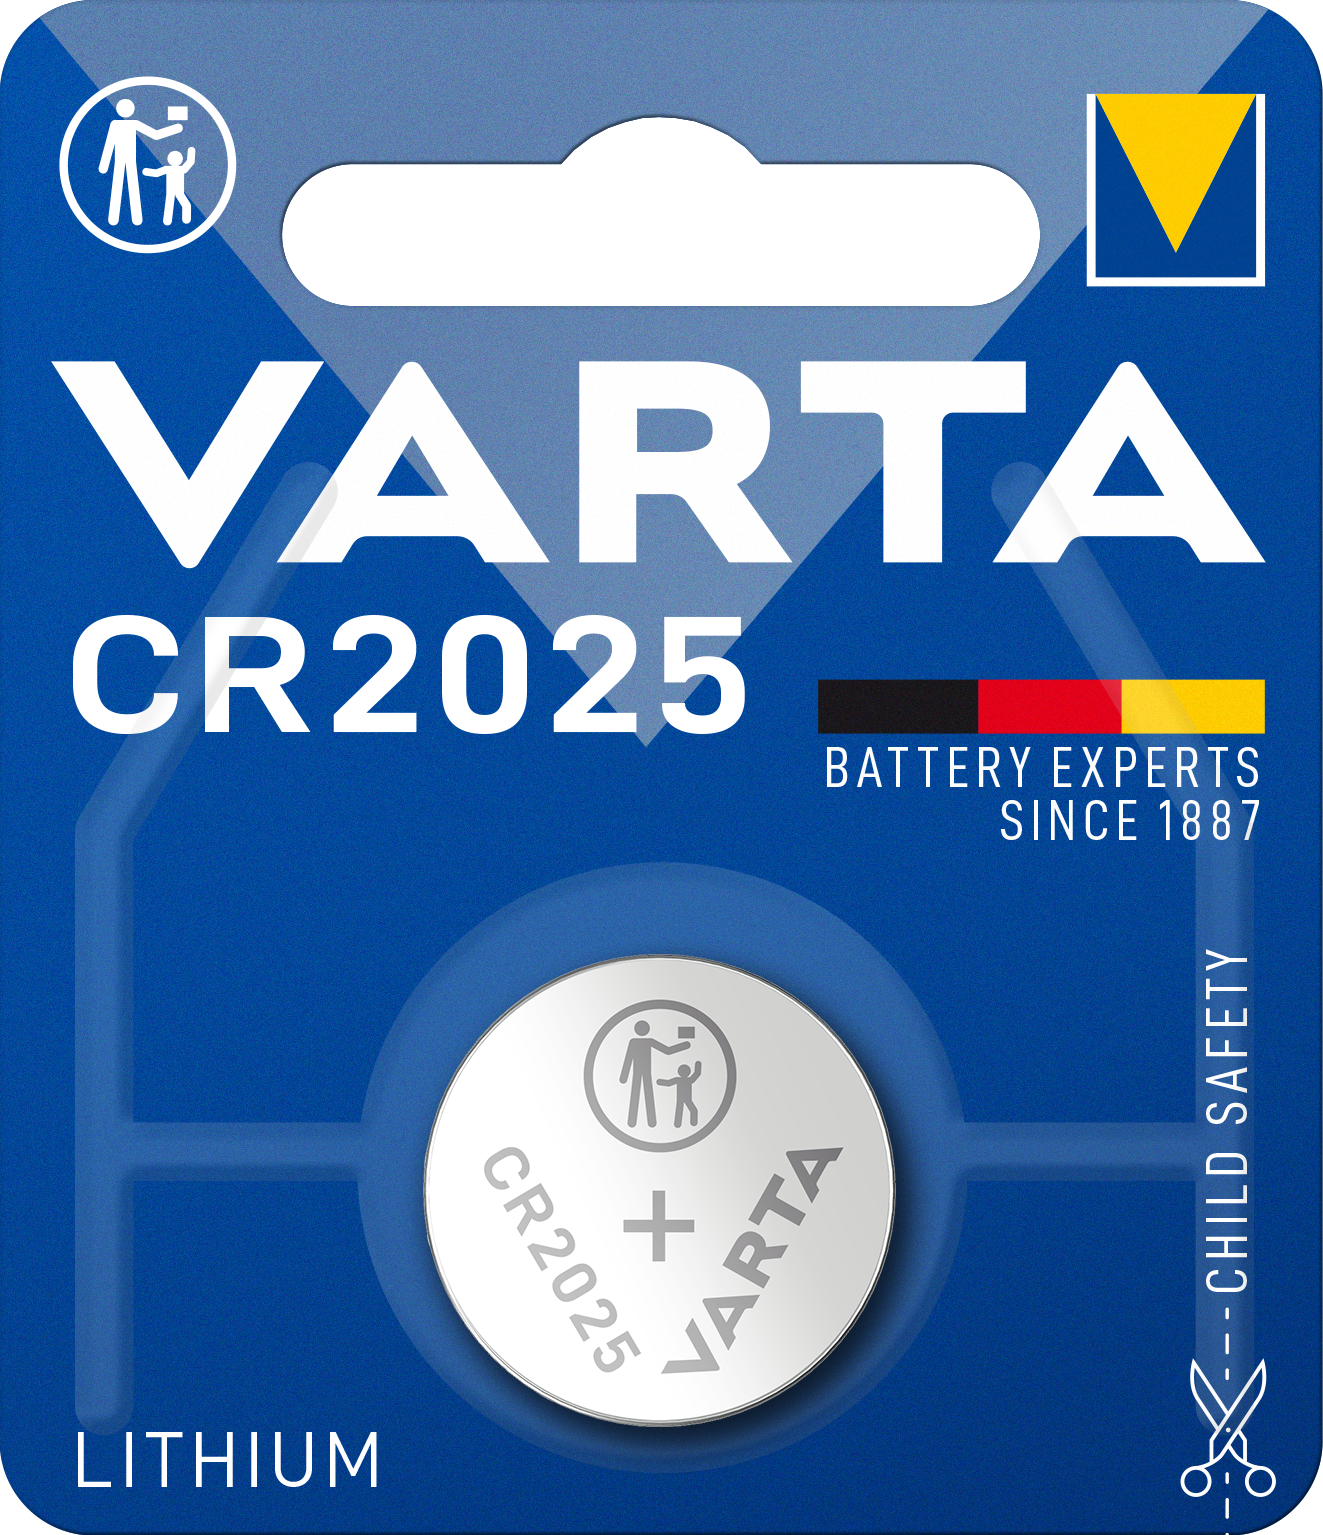 VARTA - Lithium - 2025